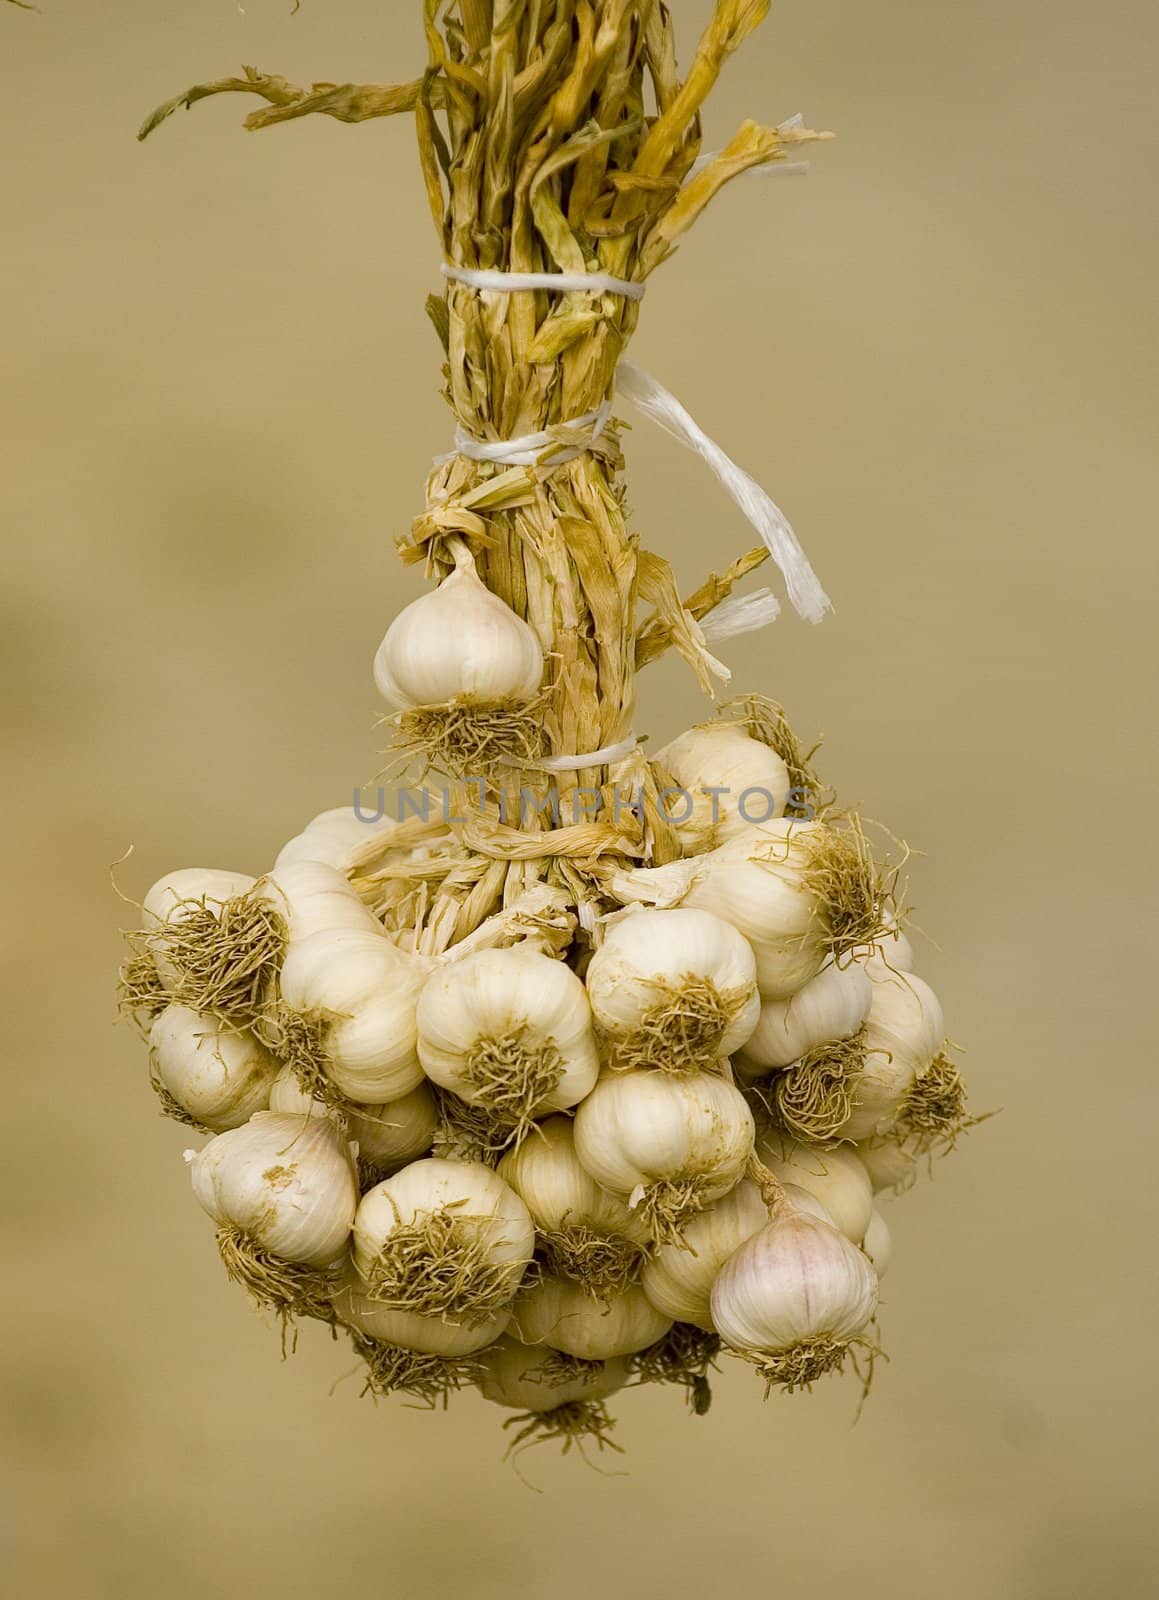 Garlic by kobby_dagan